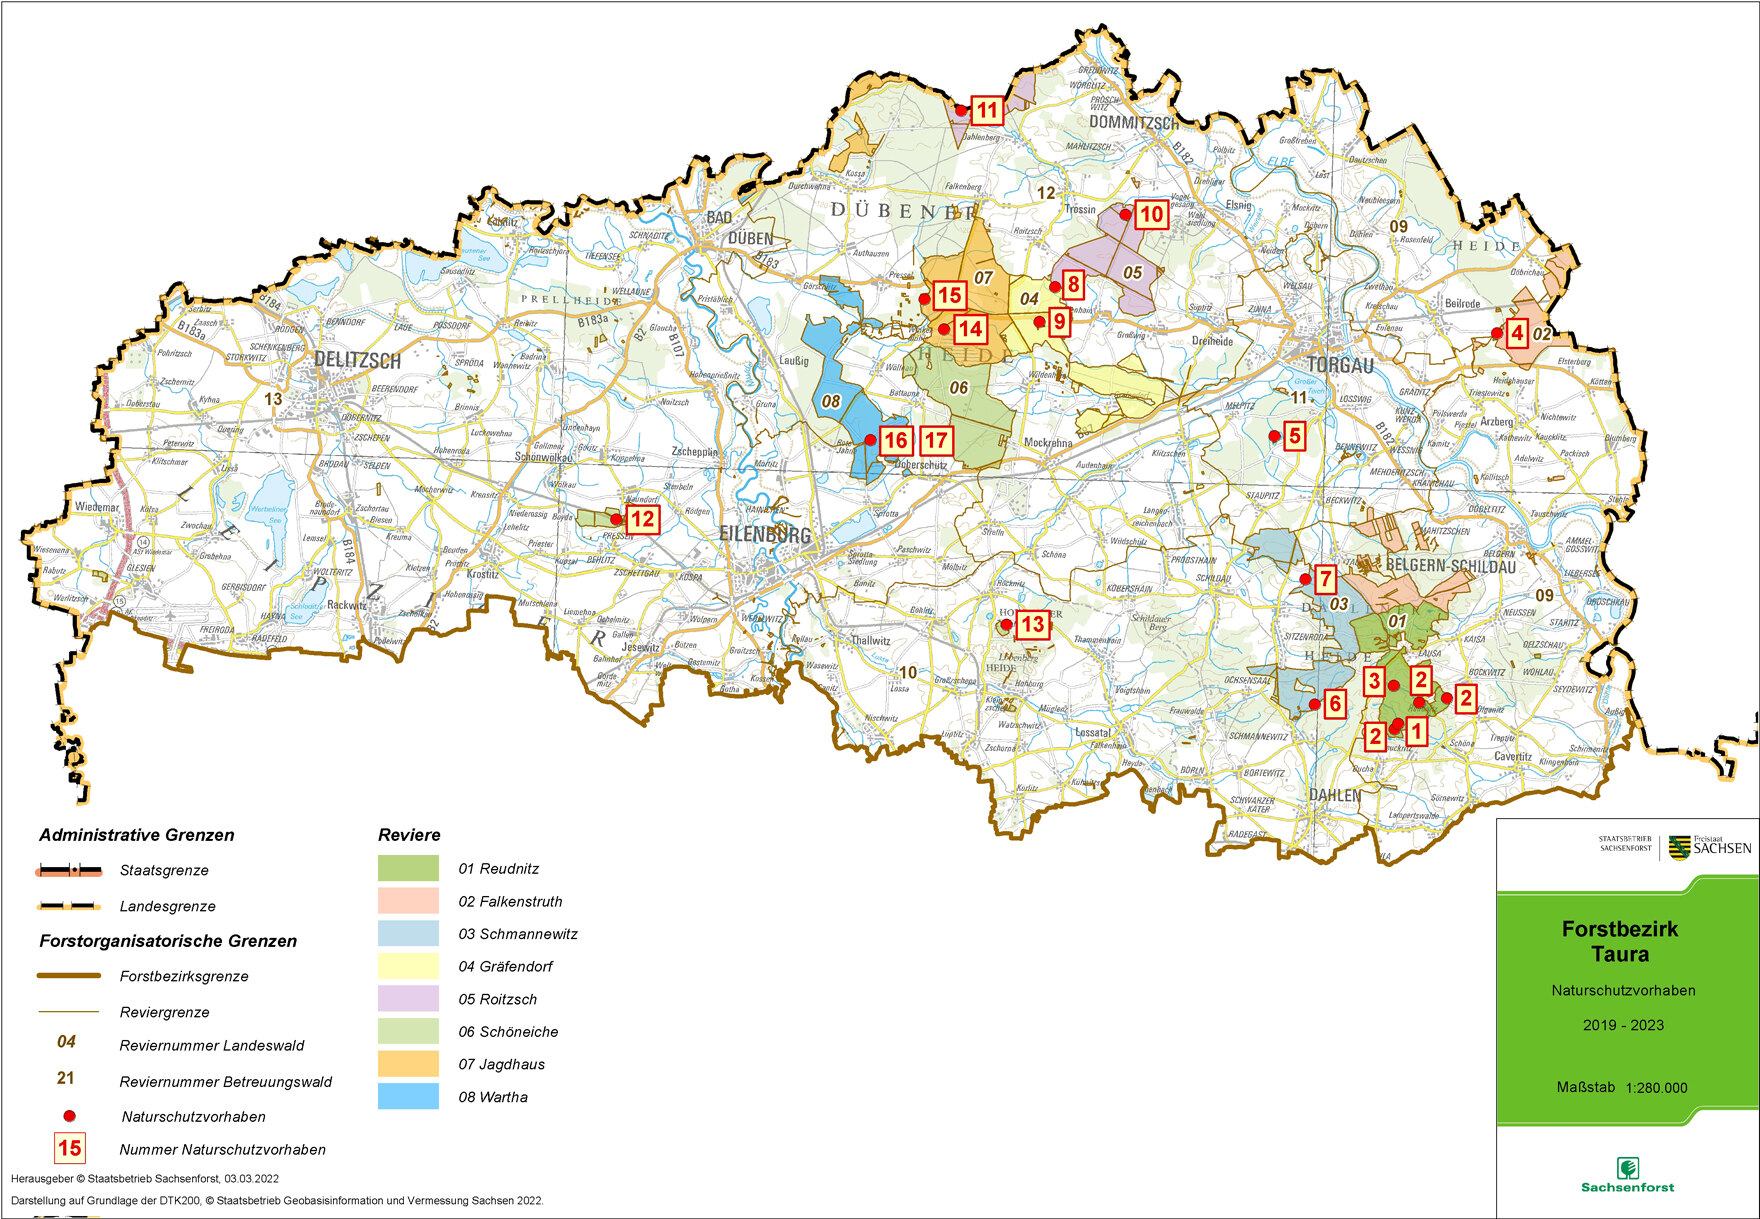 Übersichtskarte des Forstbezirkes mit eingezeichneten Standorten der Naturschutzprojekte